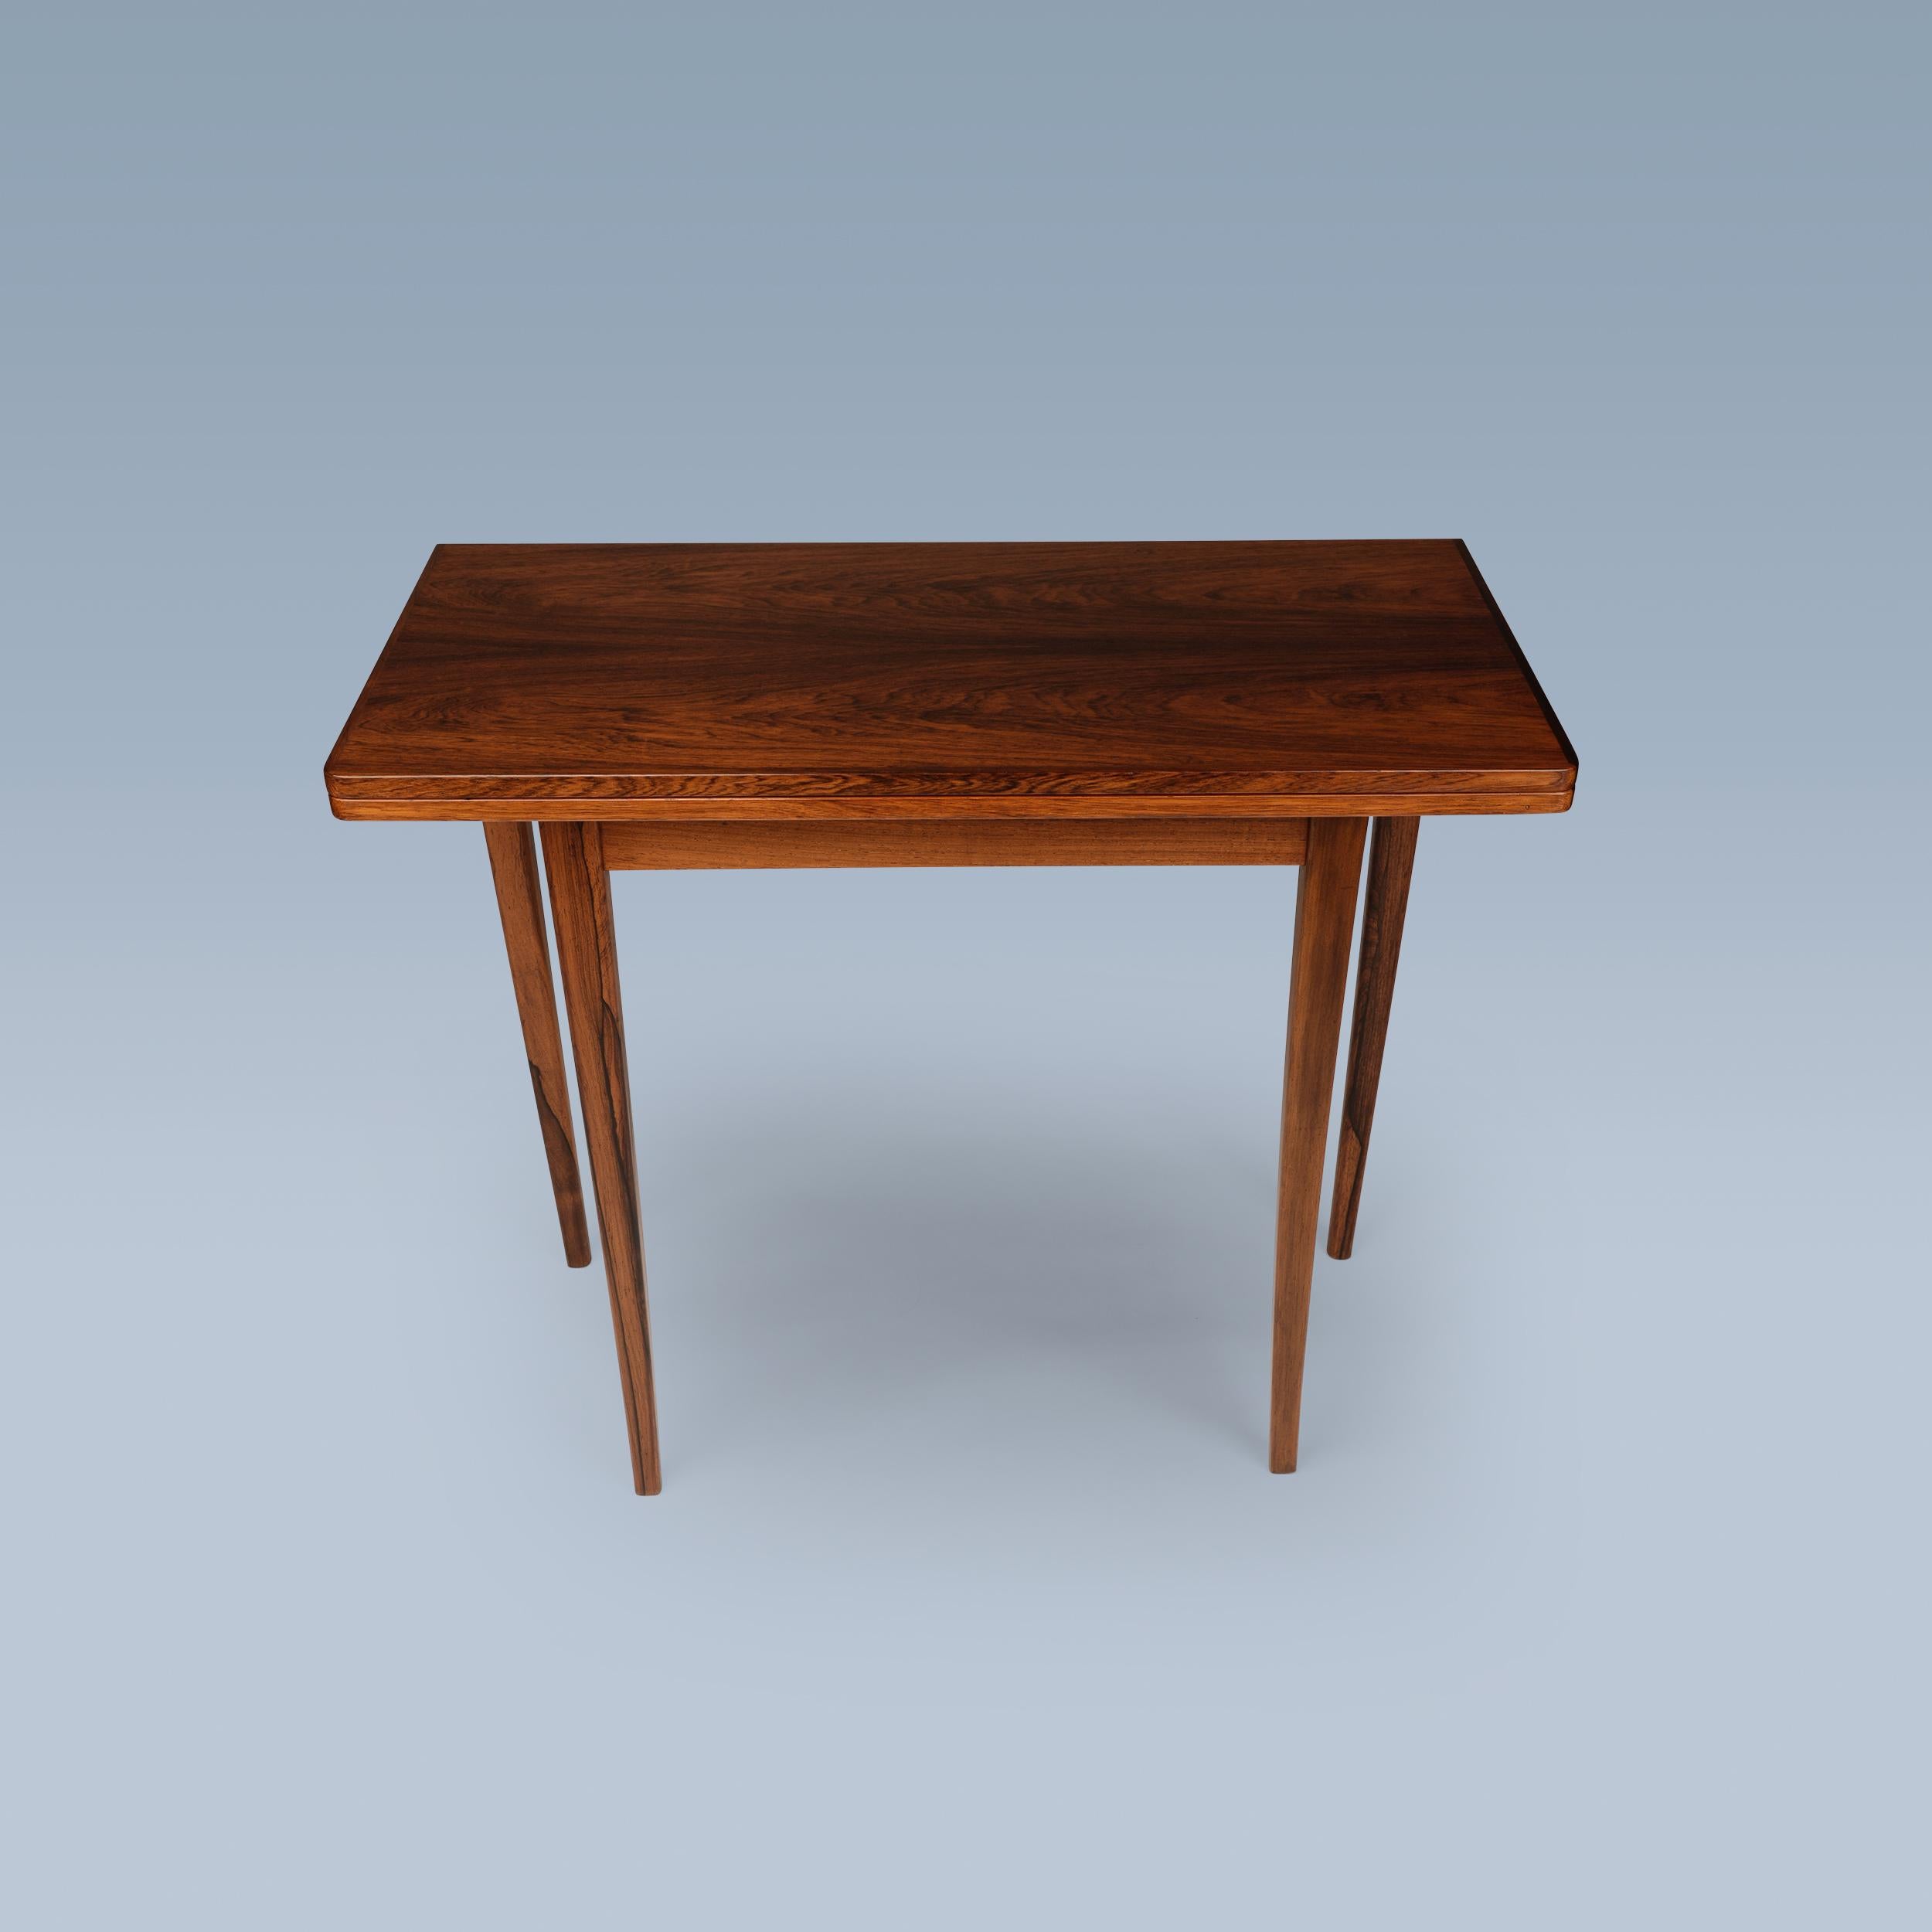 Dieser elegante Spiel- und Kartentisch aus Palisanderholz lässt sich auf die halbe/doppelte Größe falten. Er hat eine Tischplatte mit dekorativen blau getönten Fliesen in den Ecken und Messingbeschlägen.

Der Tisch wurde ca. in den 1950-1960er